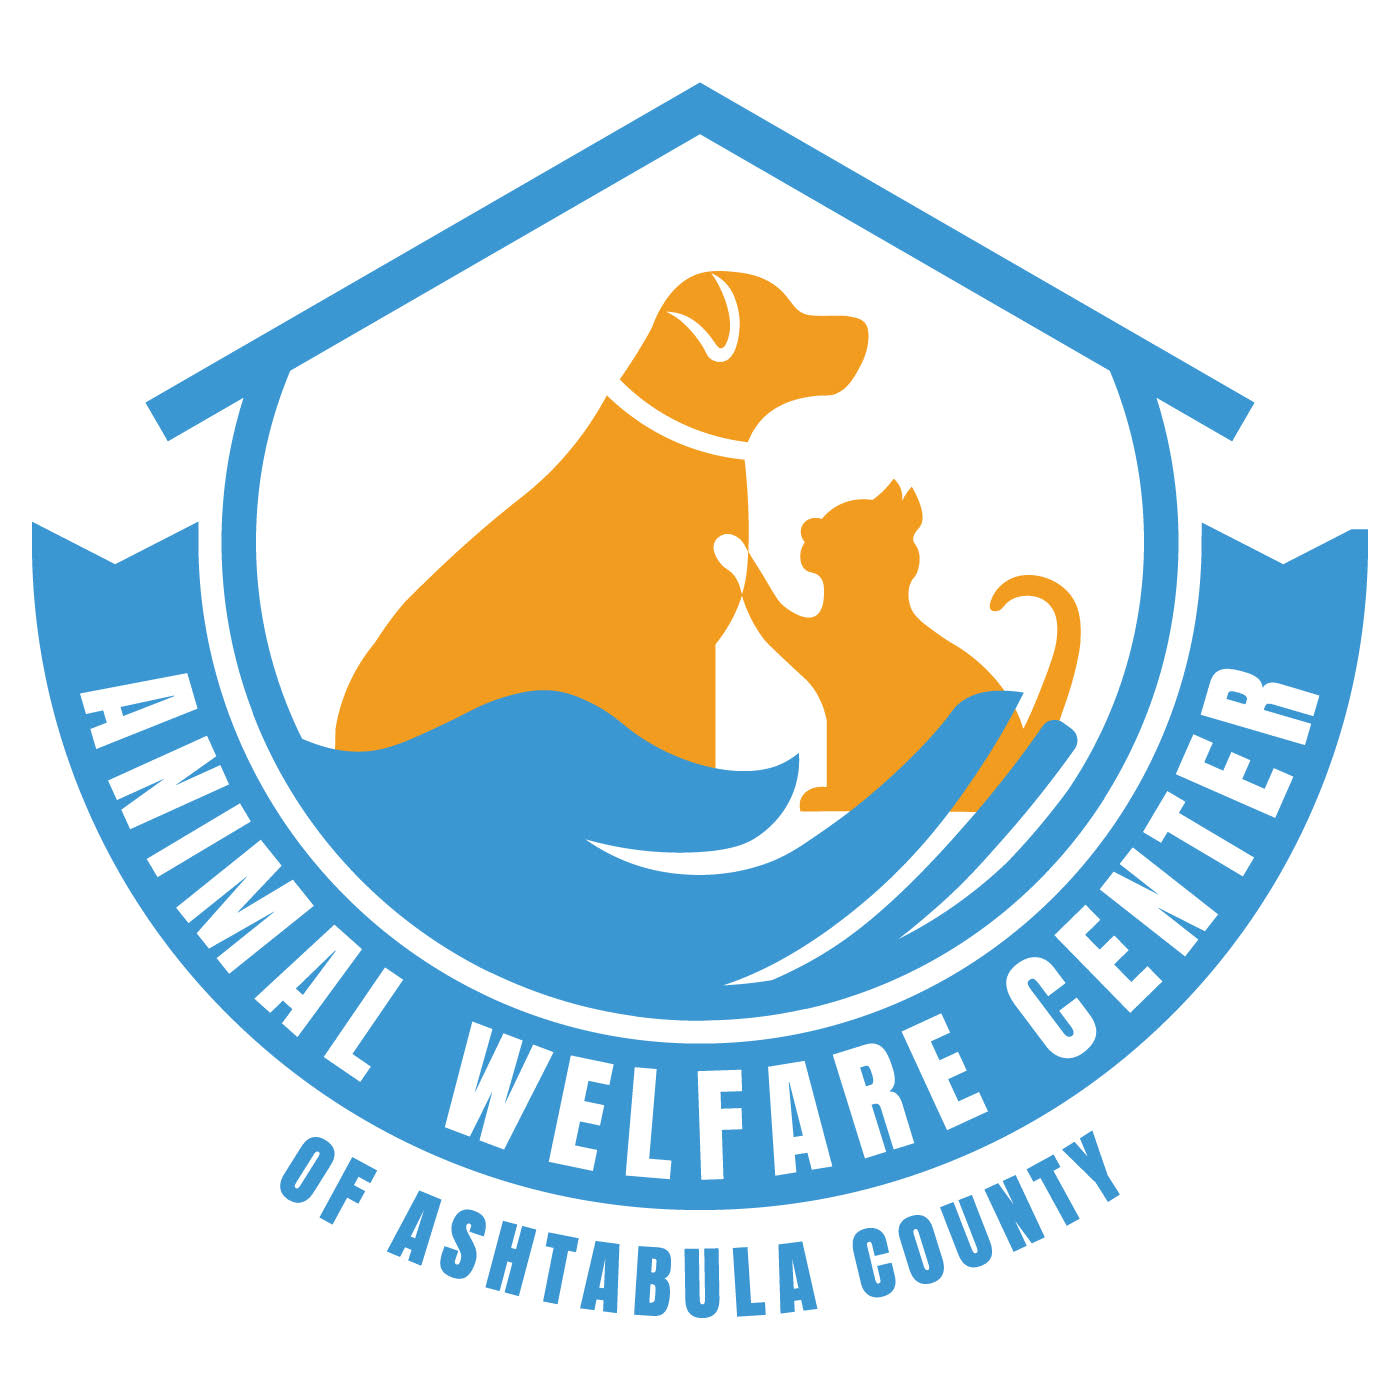 Ashtabula County Ohio nudistl. Animal Protection Society logo.